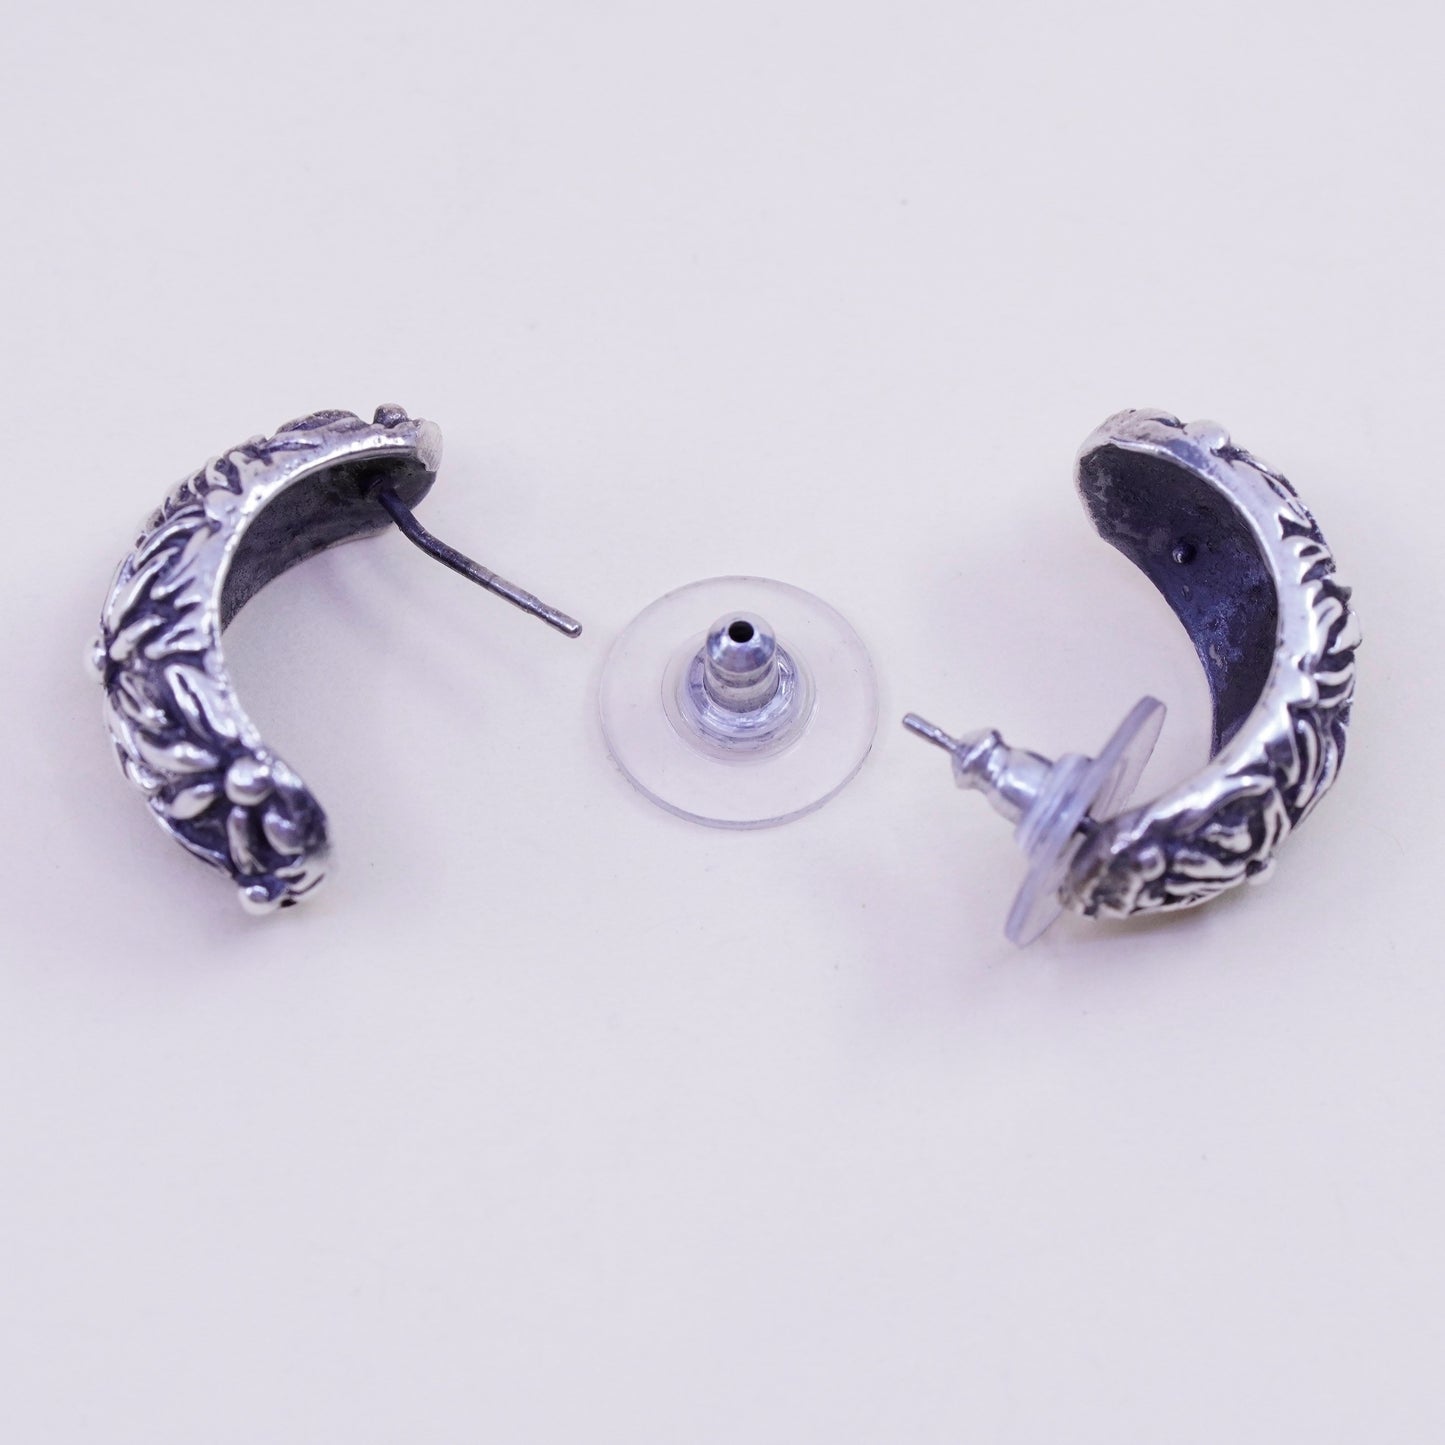 Vintage sterling silver handmade huggie studs, filigree 925 floral earrings